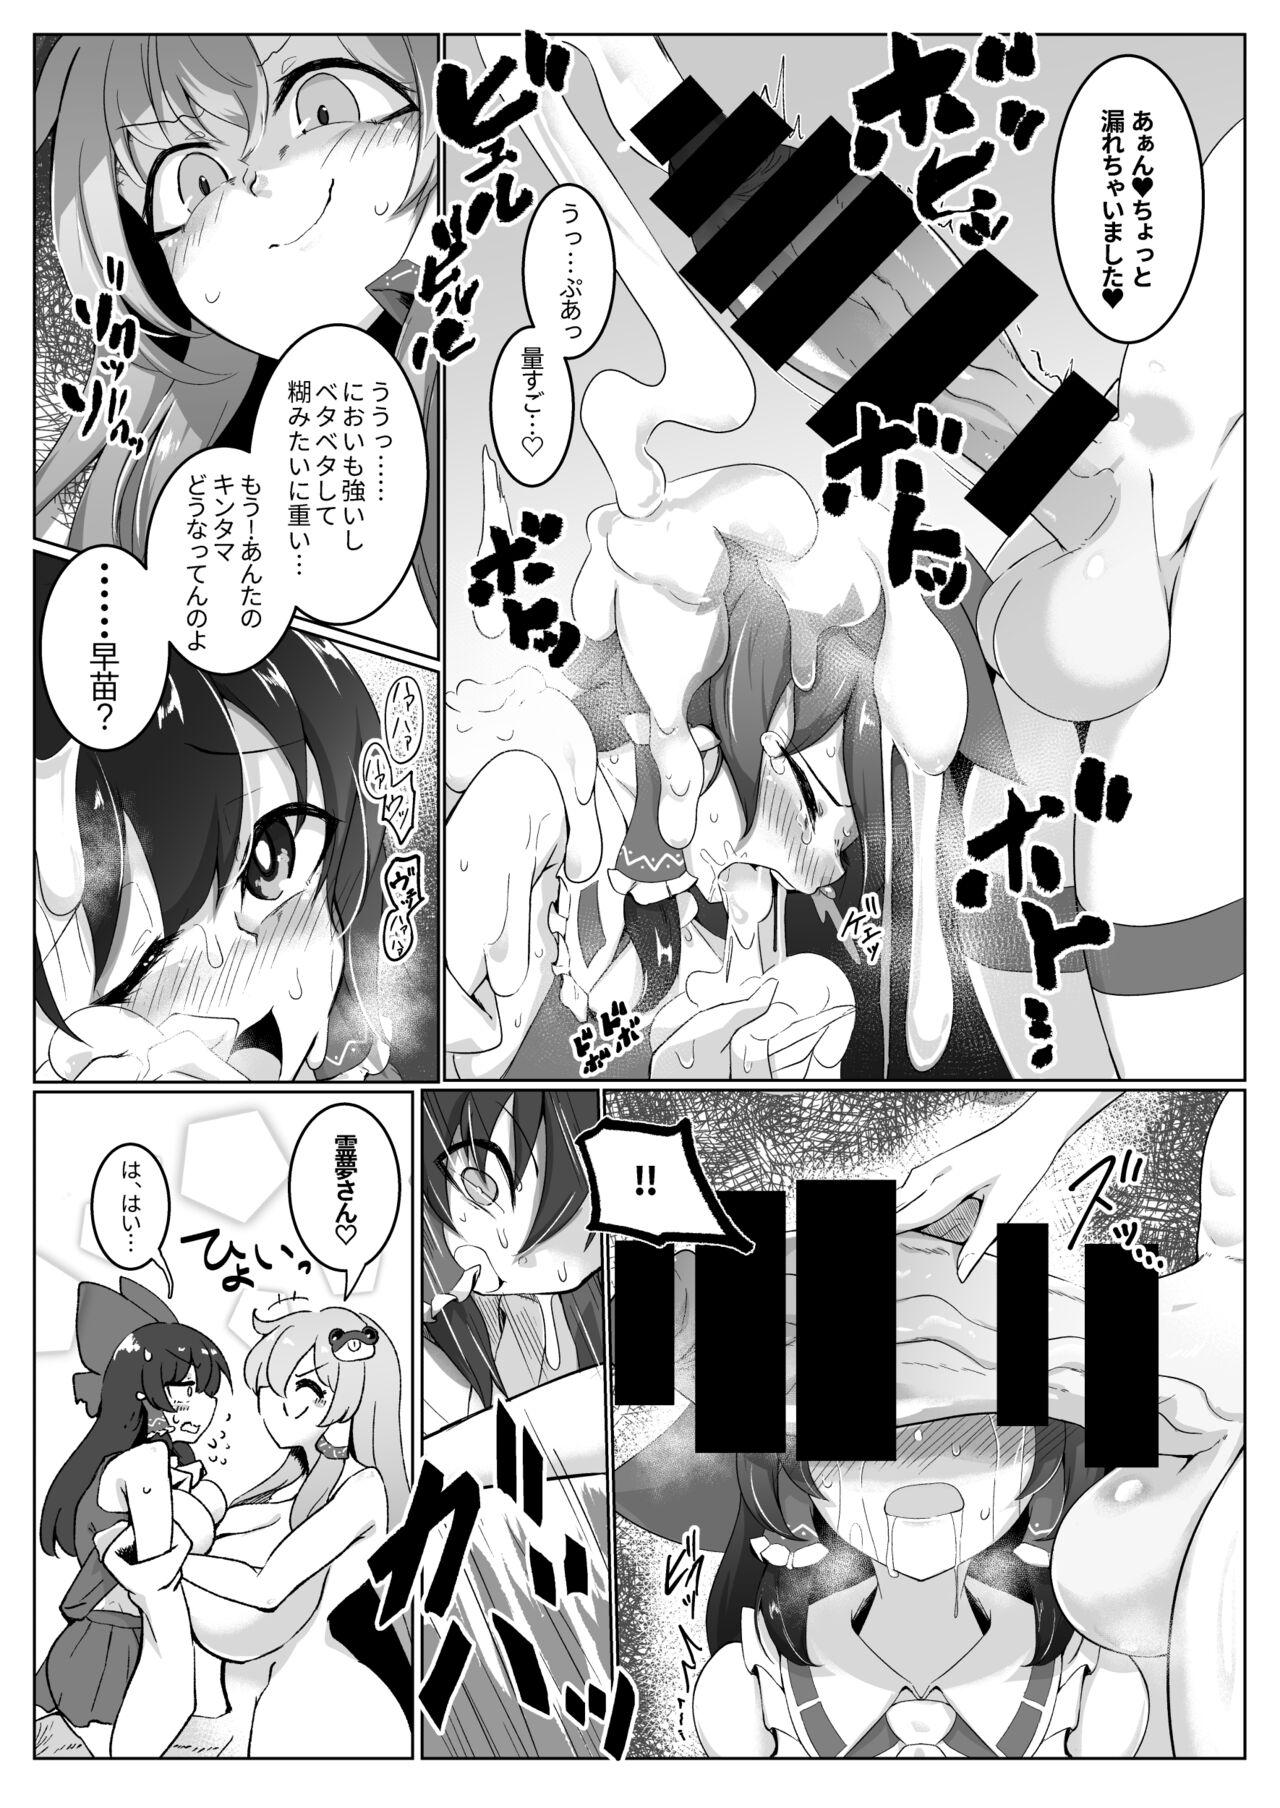 Foda Reimu-san, mata! Ecchi shimashou! - Touhou project Jockstrap - Page 4